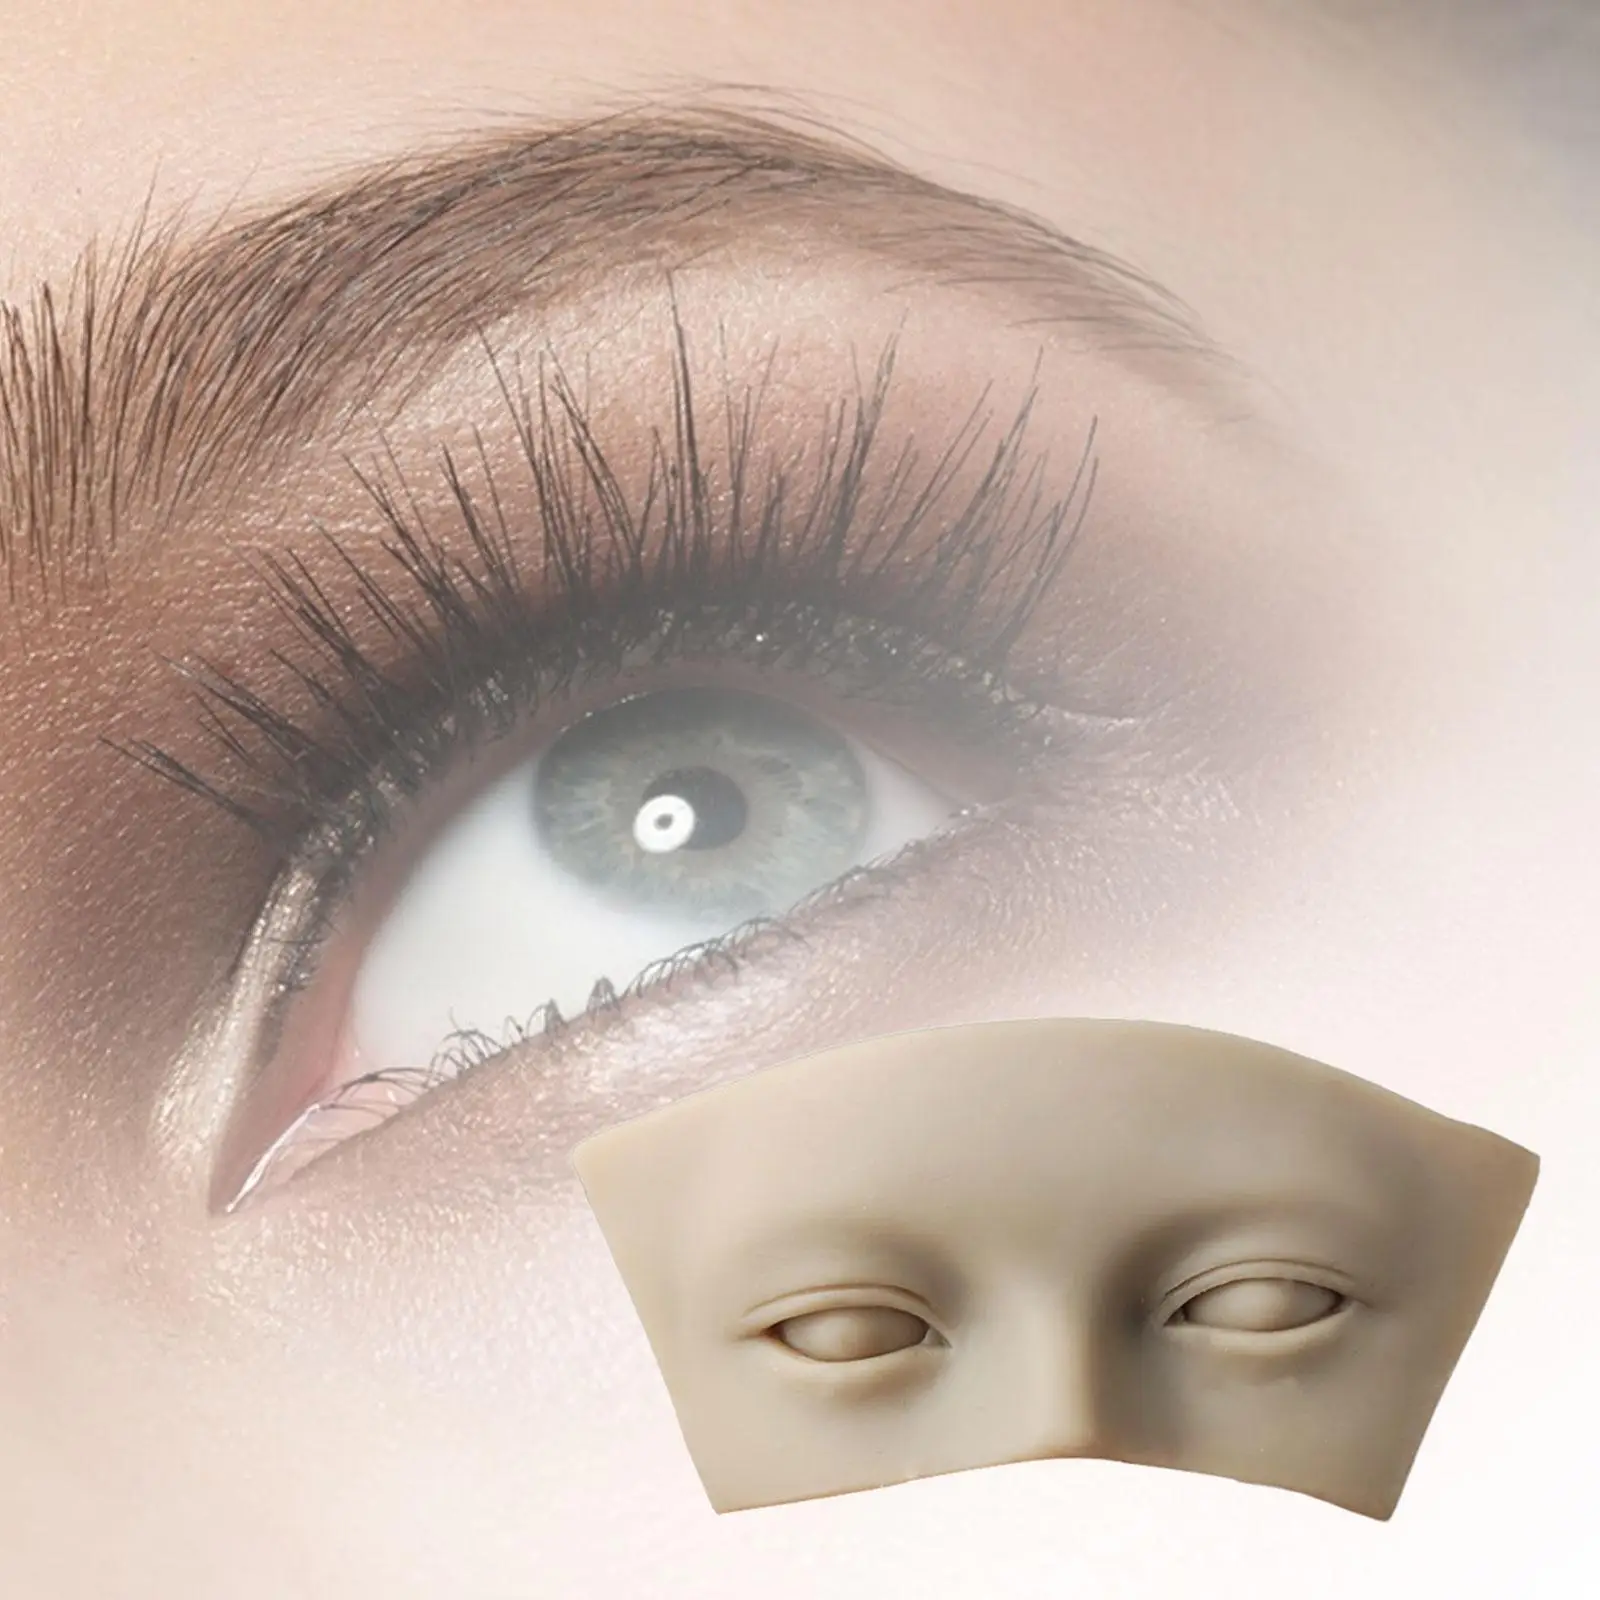 Portable Eye Makeup Reusable Face Model Practice Board Beautician